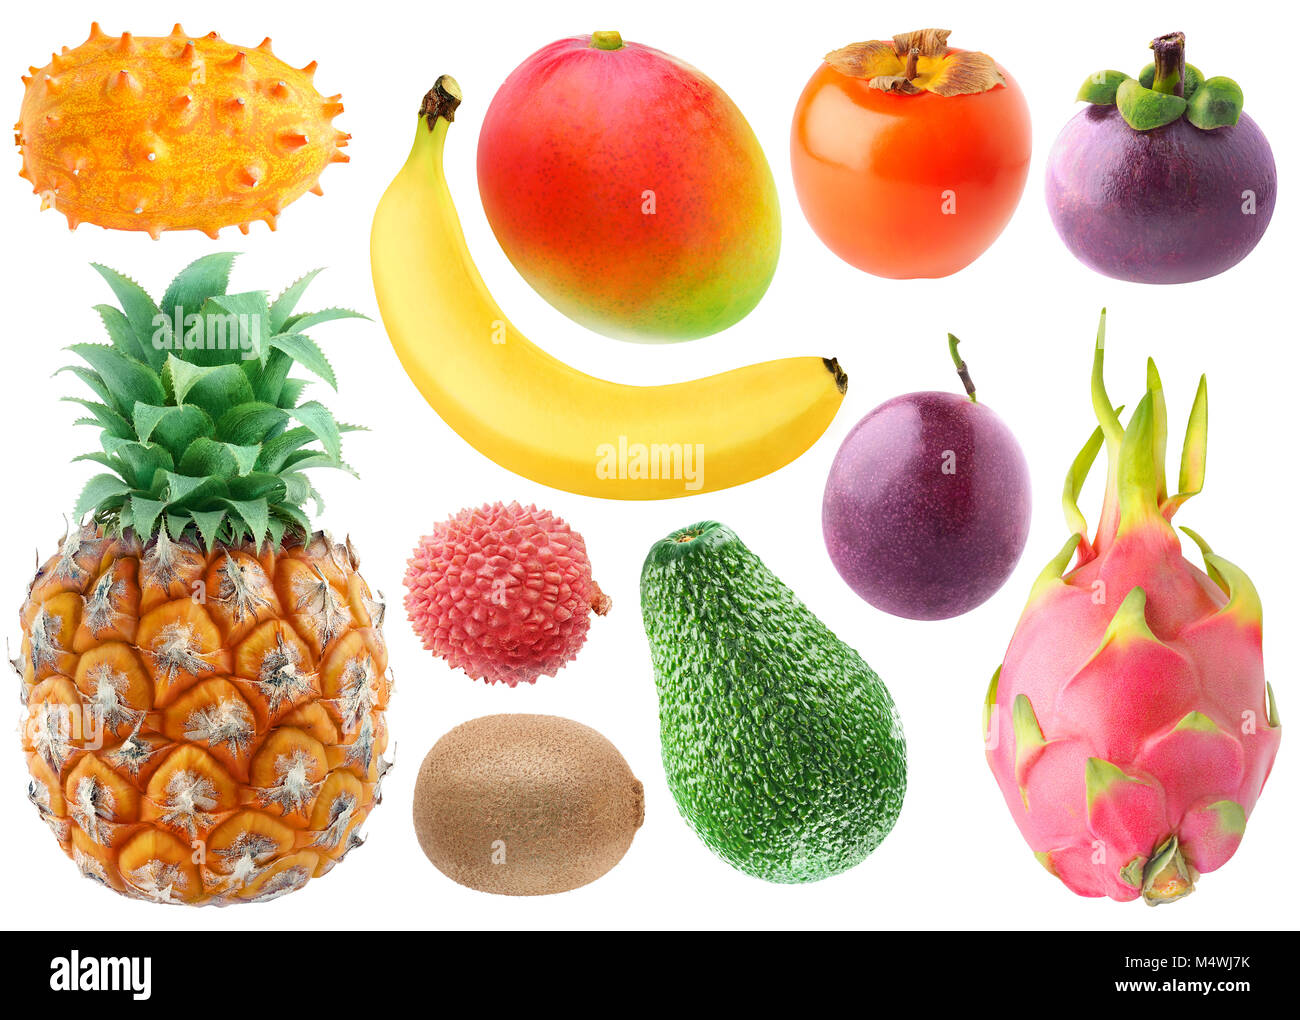 Tropische Früchte Sammlung isoliert. Frische kiwano, Banane, Mango, Kaki, Mangosteen, Ananas, lichee, Kiwi, Avocado, Maracuja und dragonfrui Stockfoto